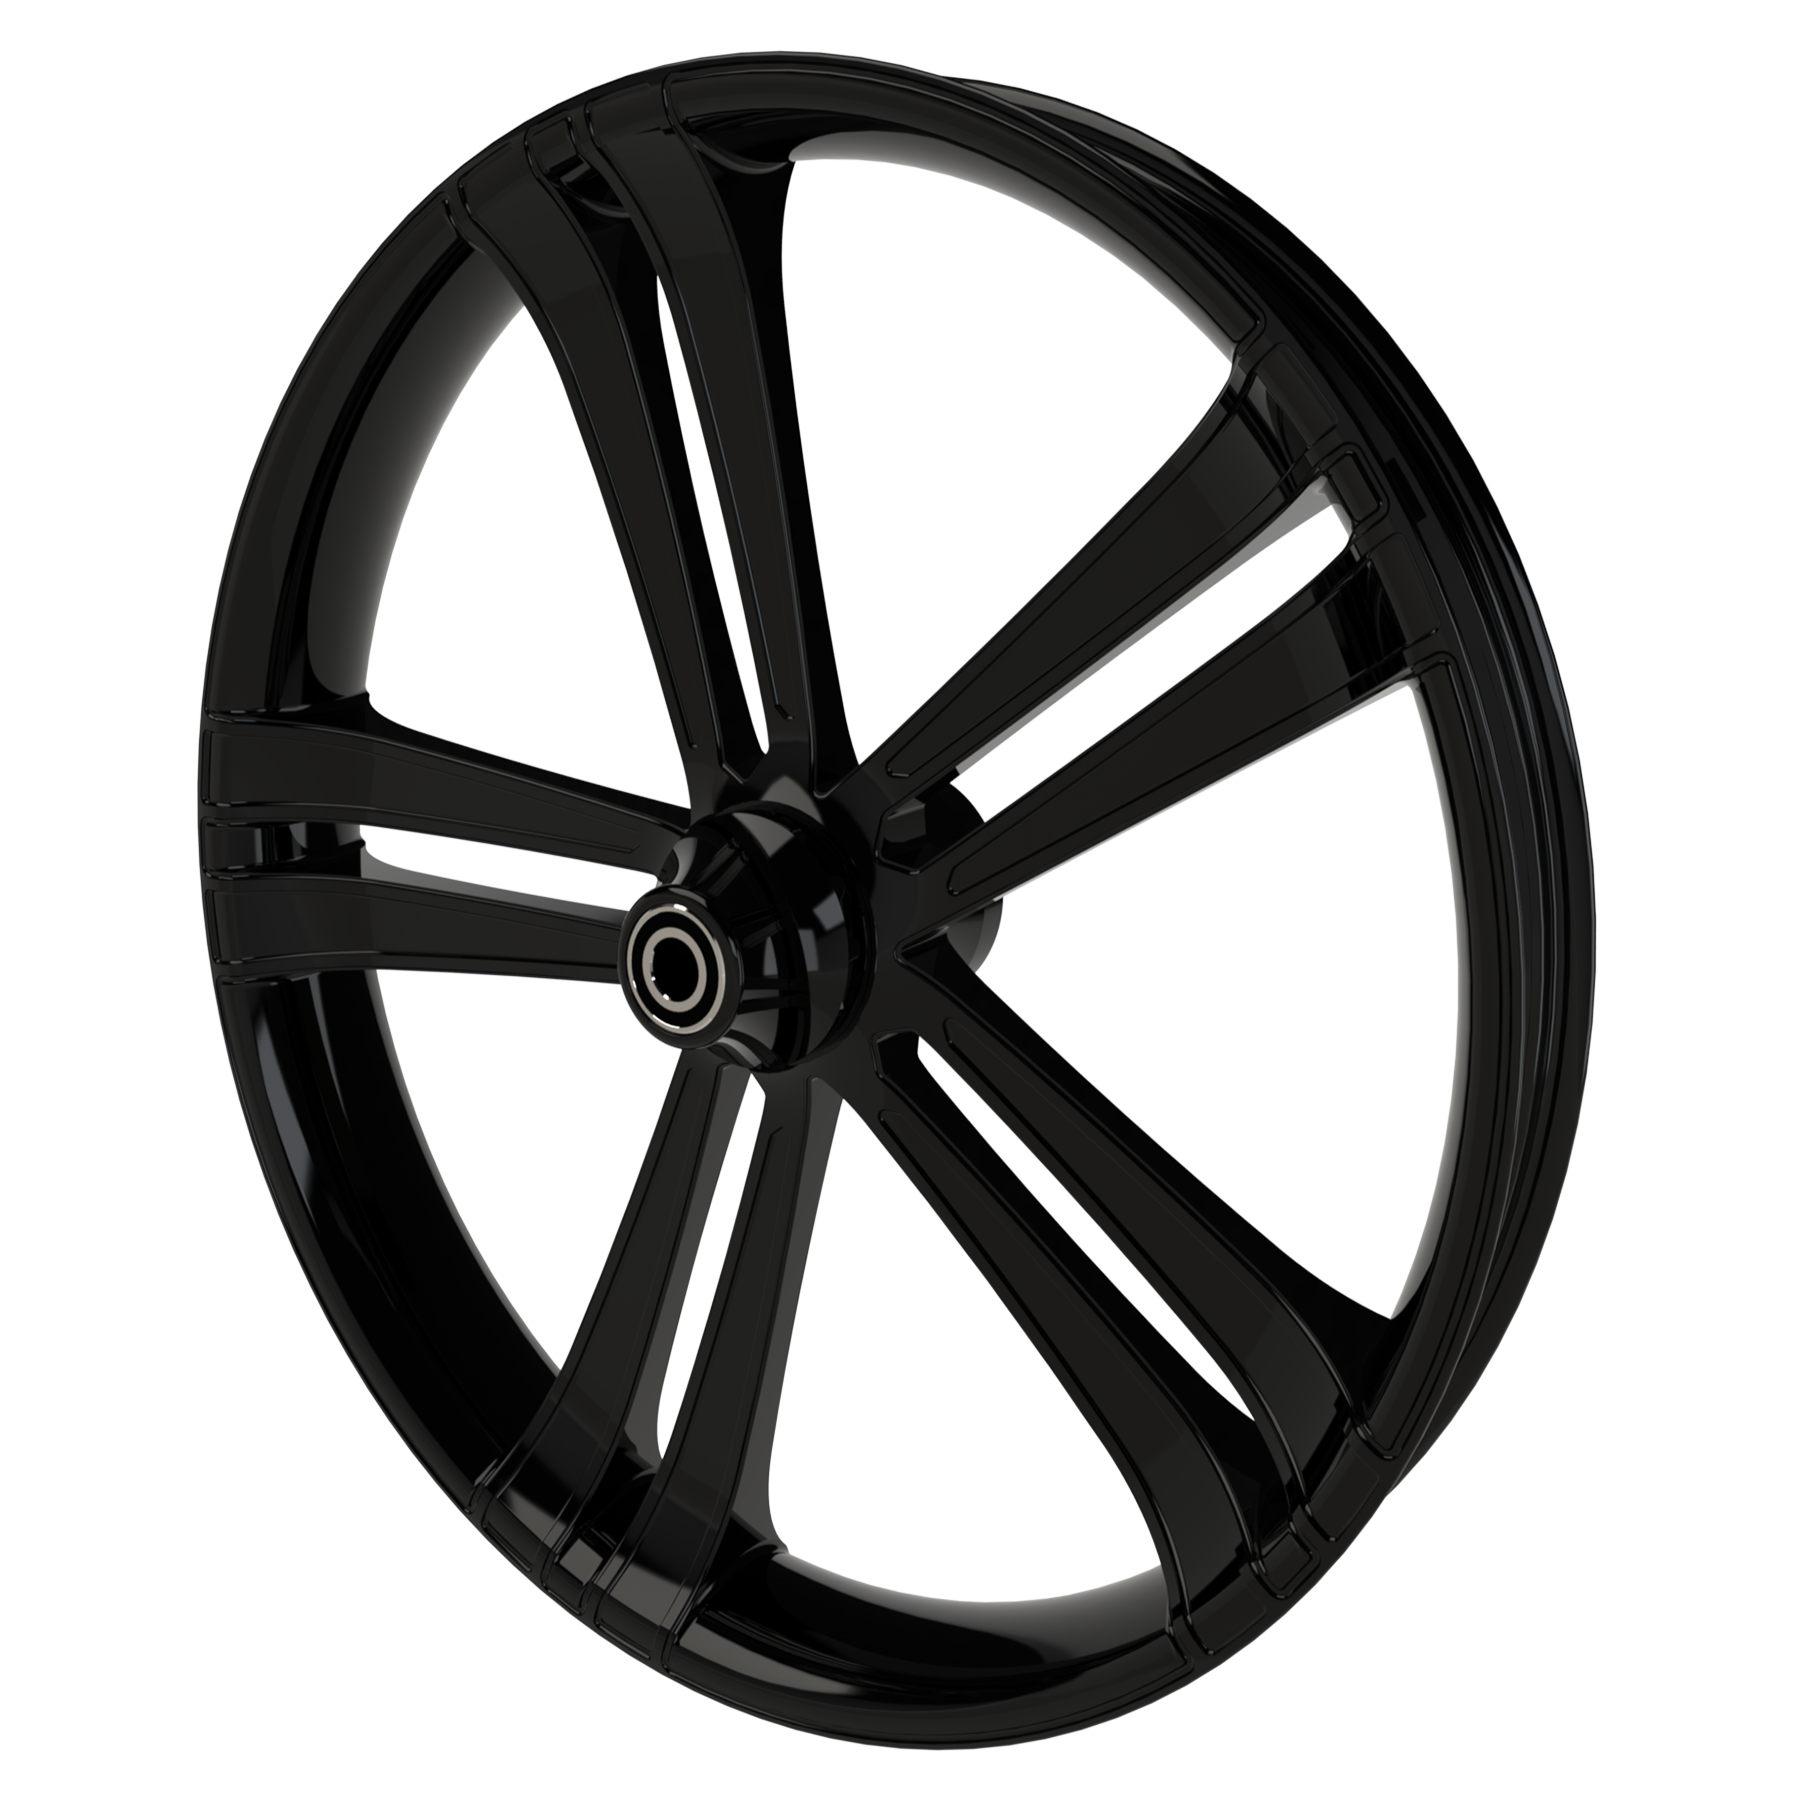 Sinful custom motorycycle wheel in black